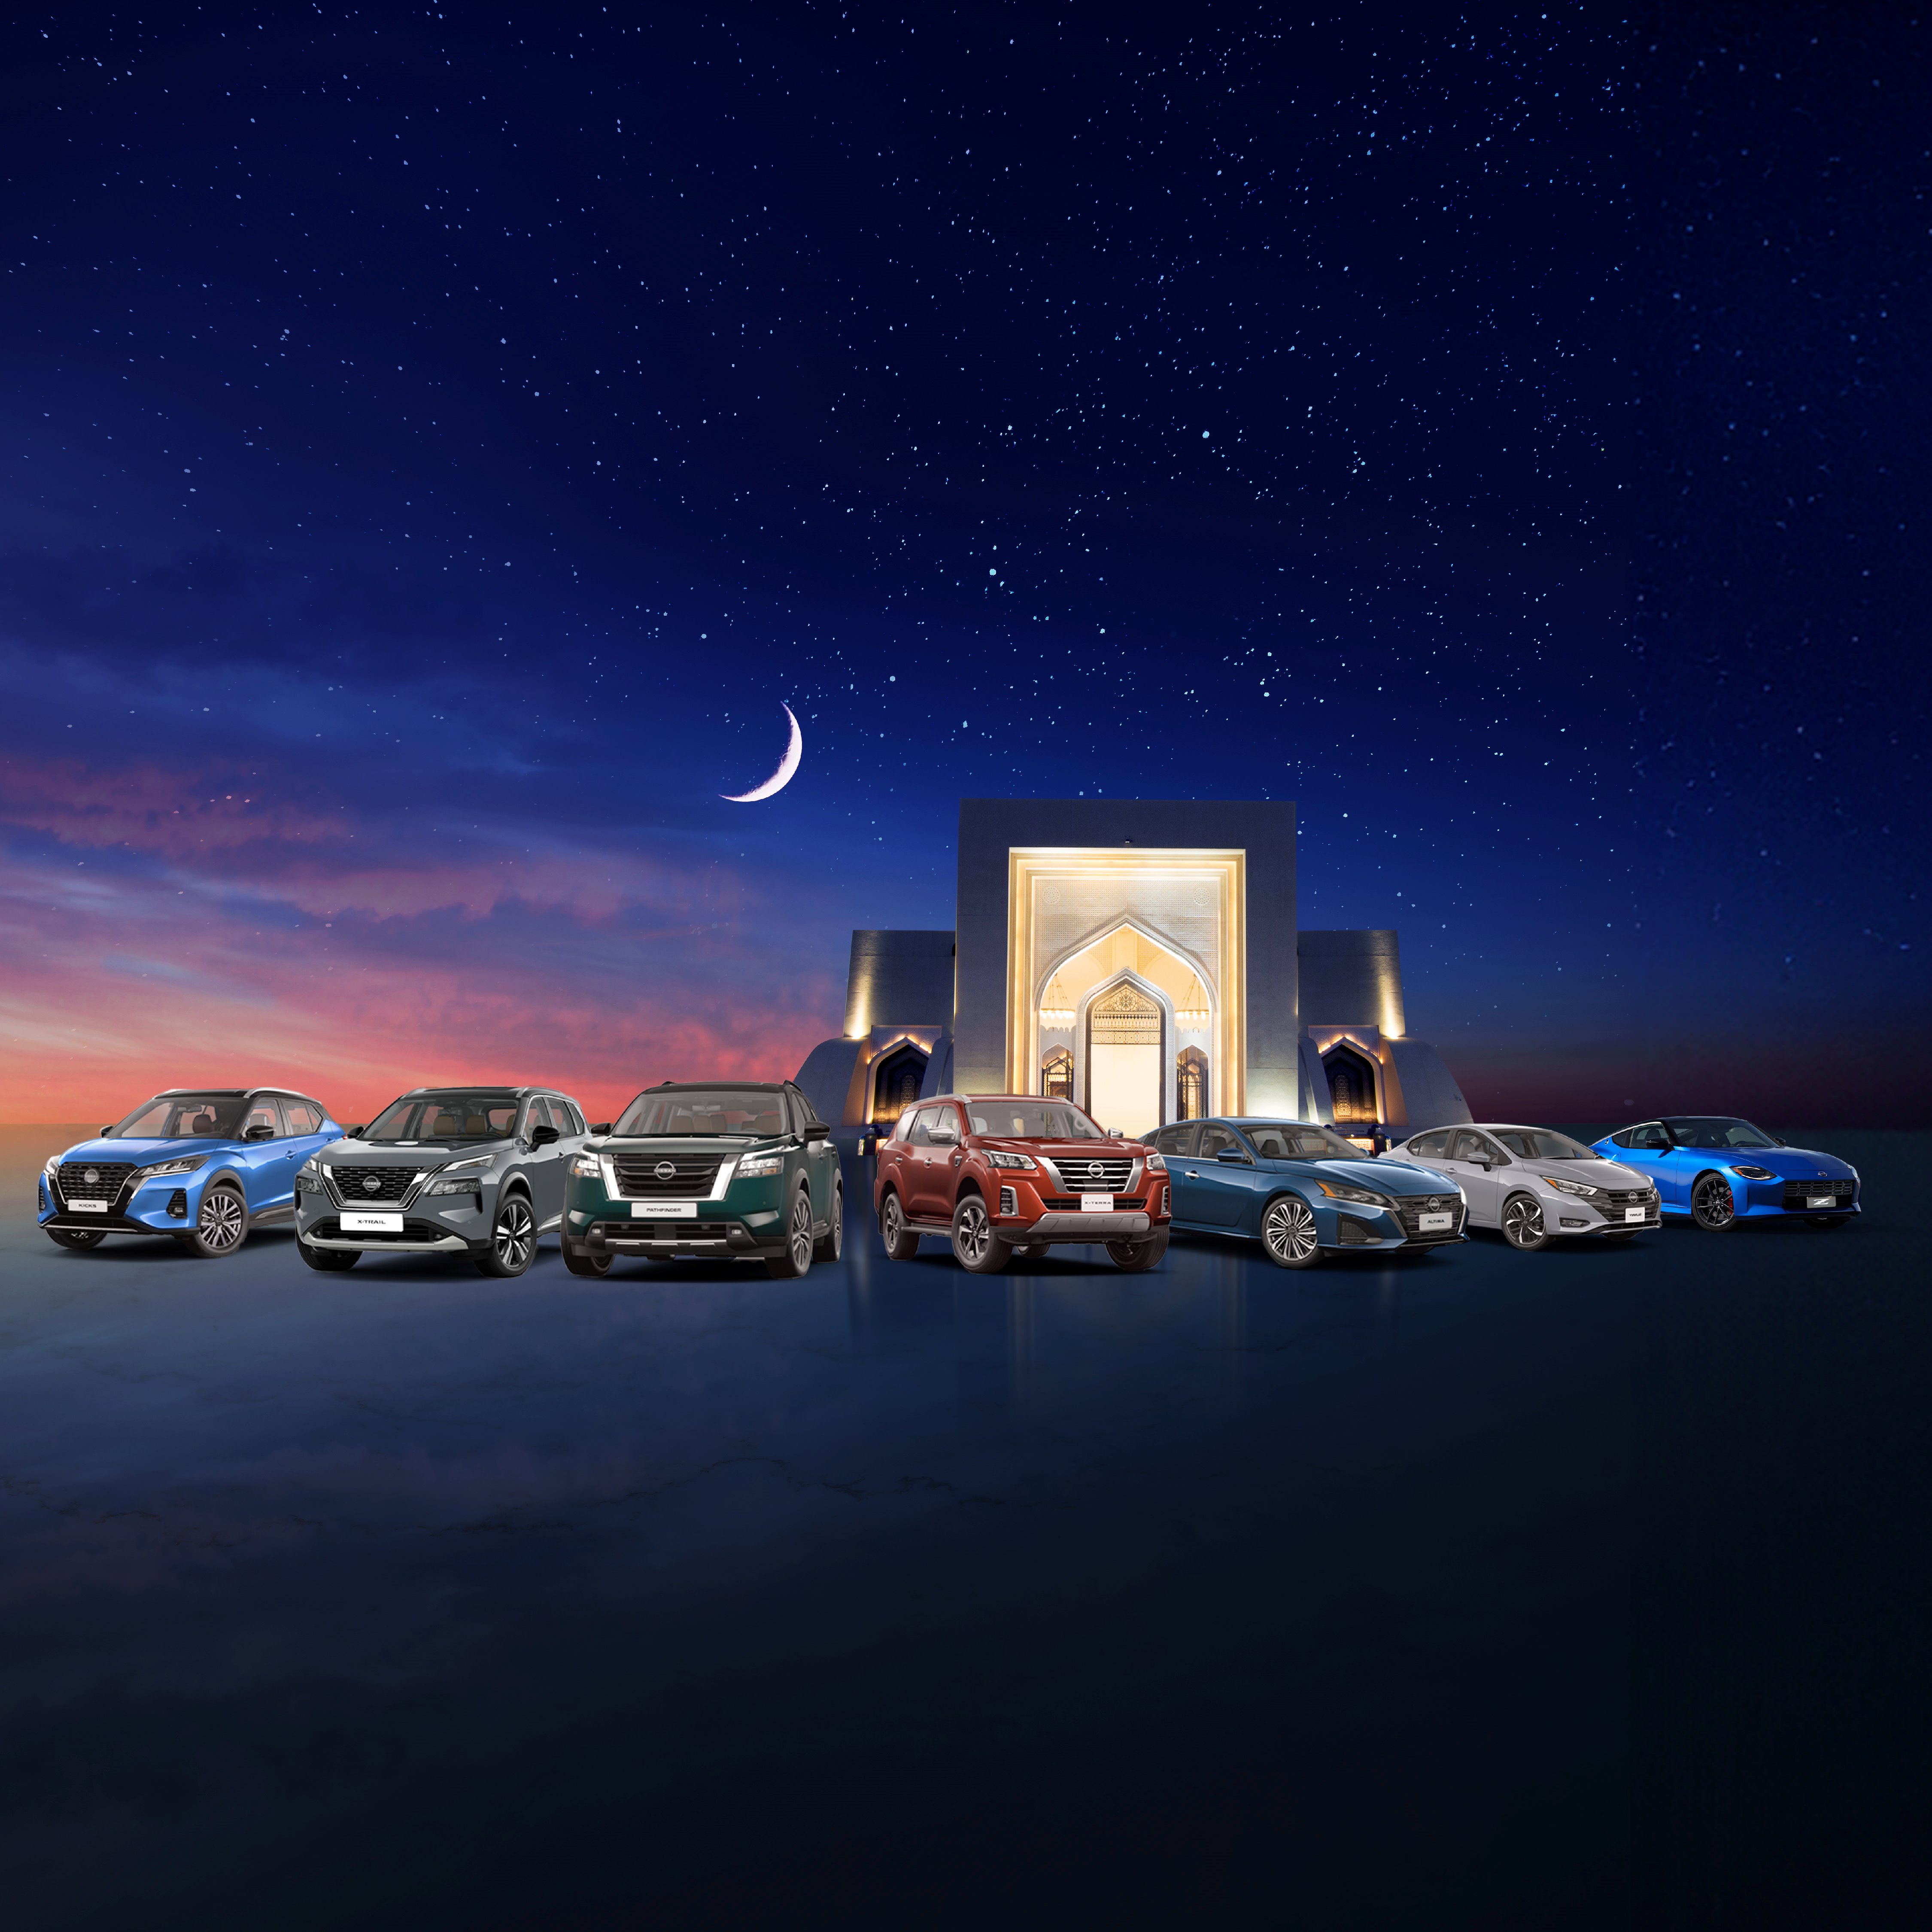 المسعود للسيارات" تطلق عروضاً حصرية خلال شهر رمضان المبارك